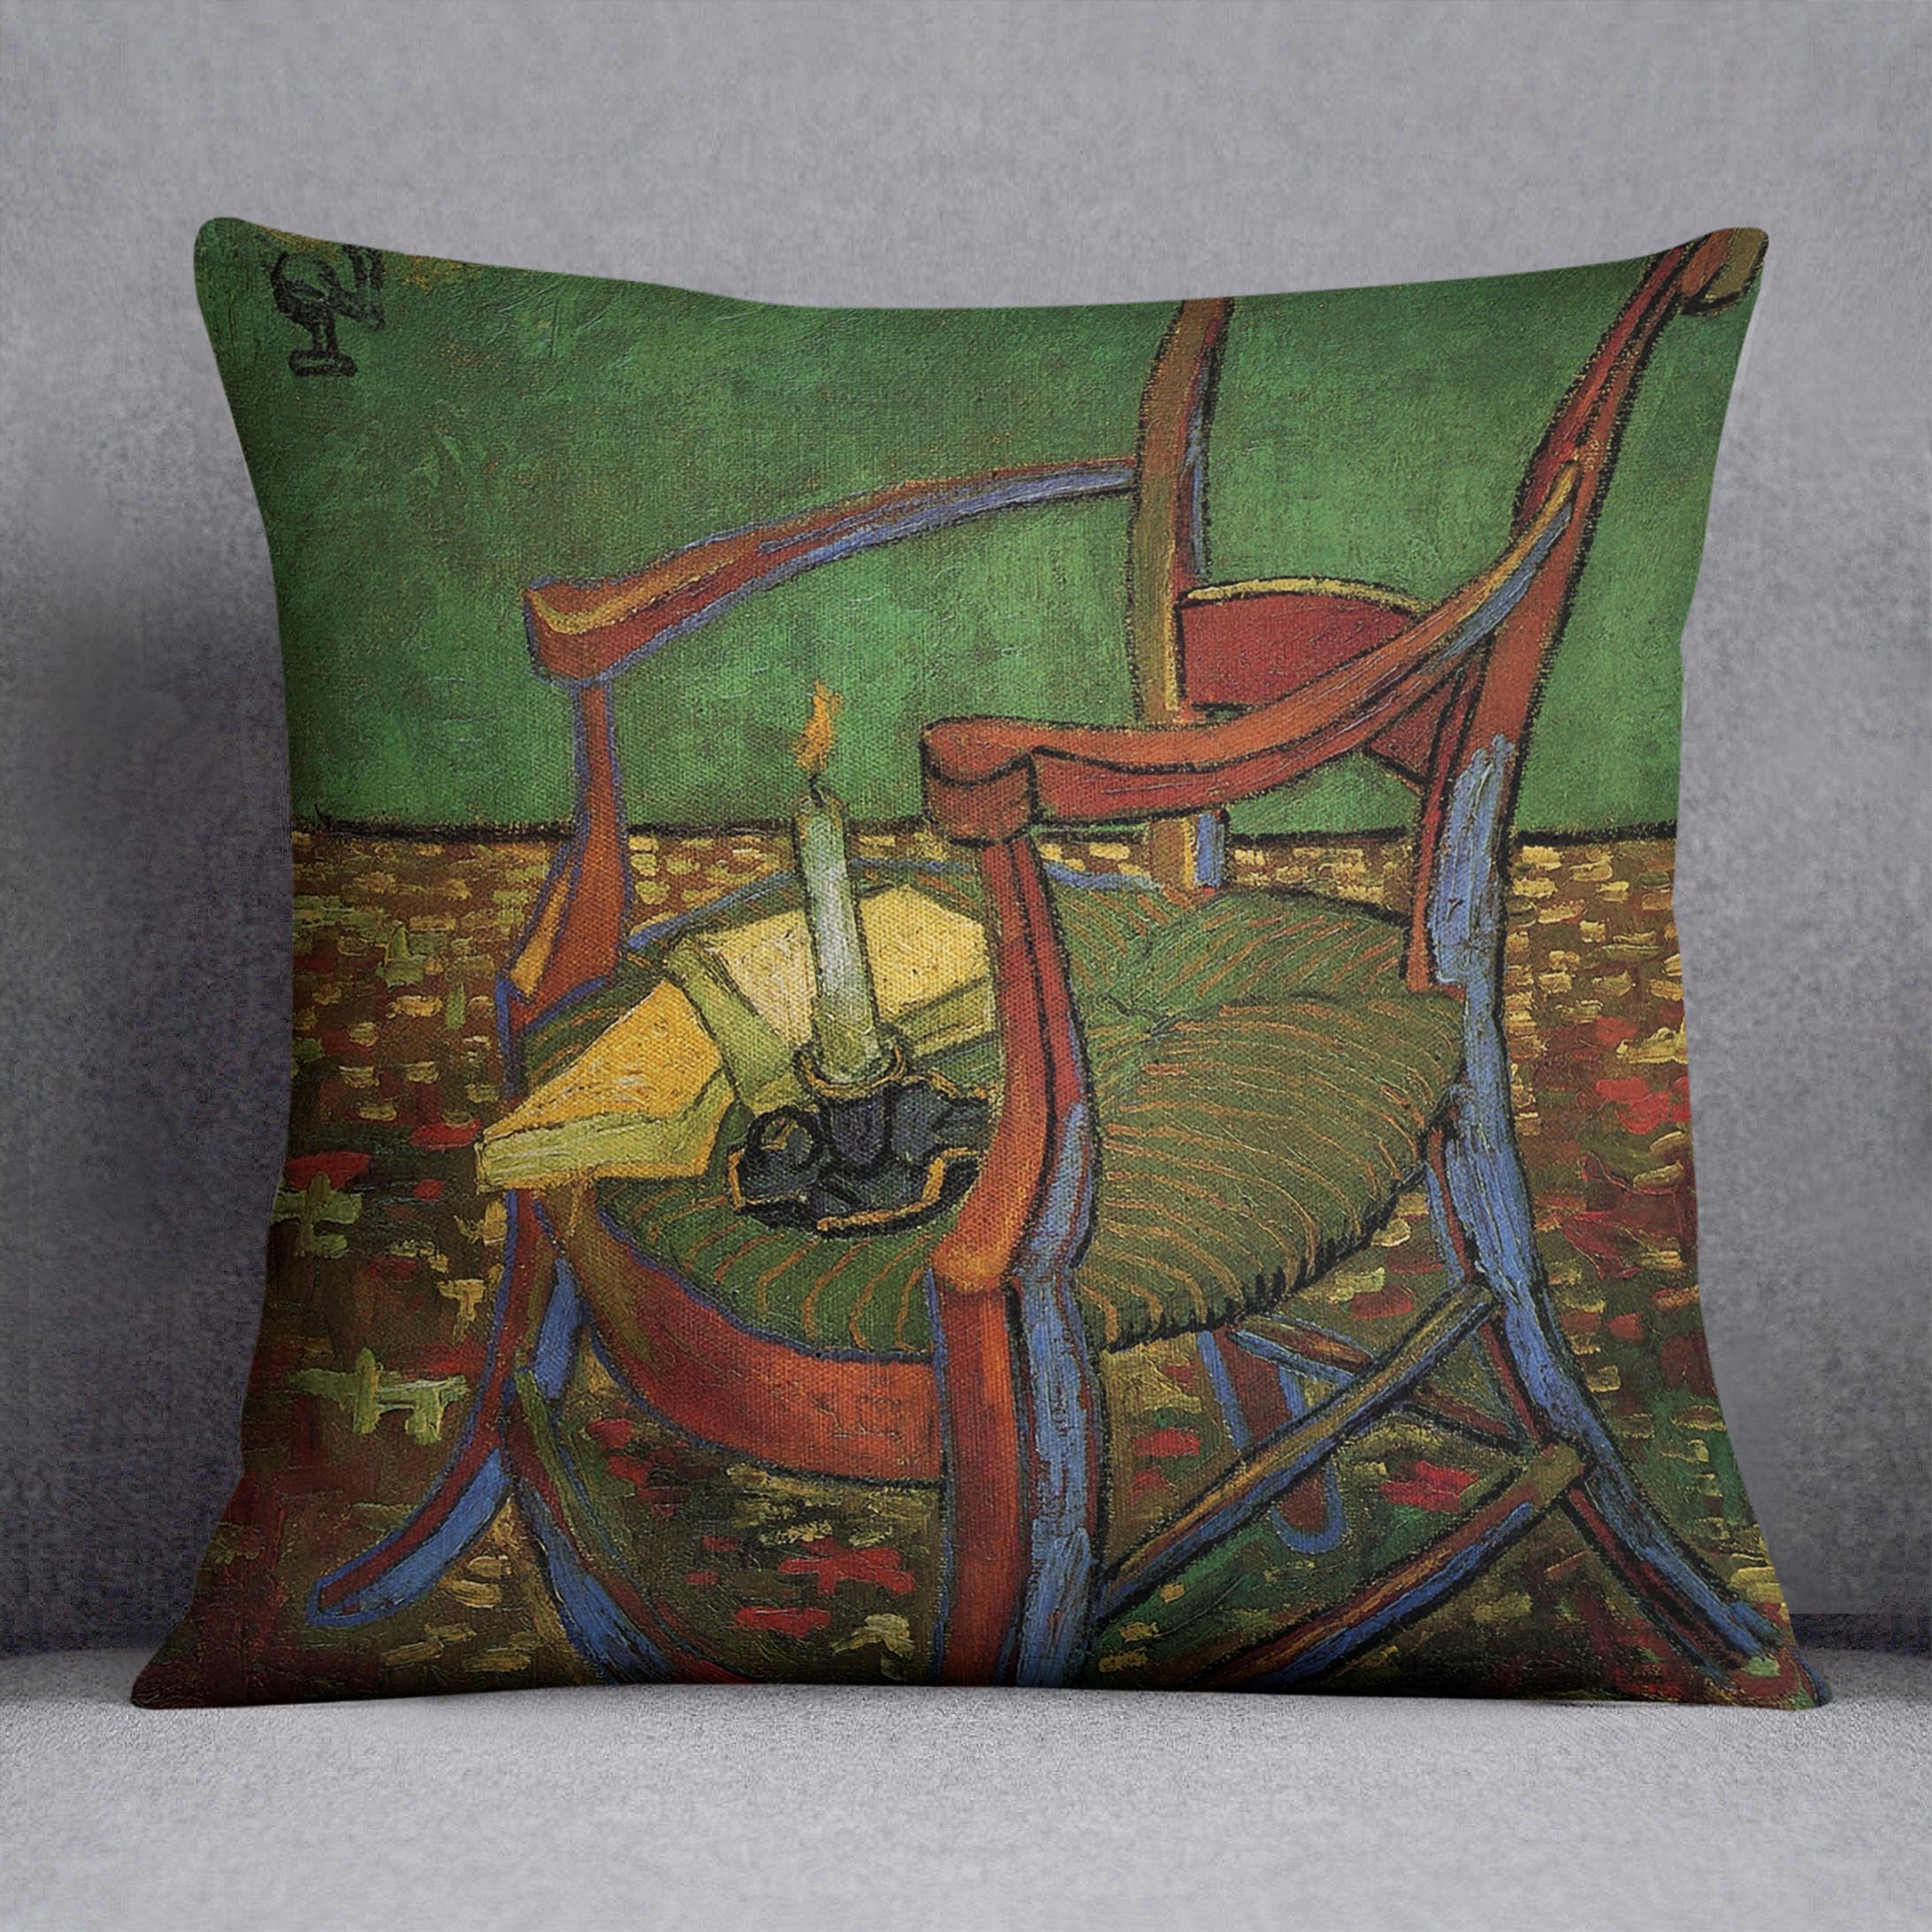 Paul Gauguin's Armchair by Van Gogh Cushion